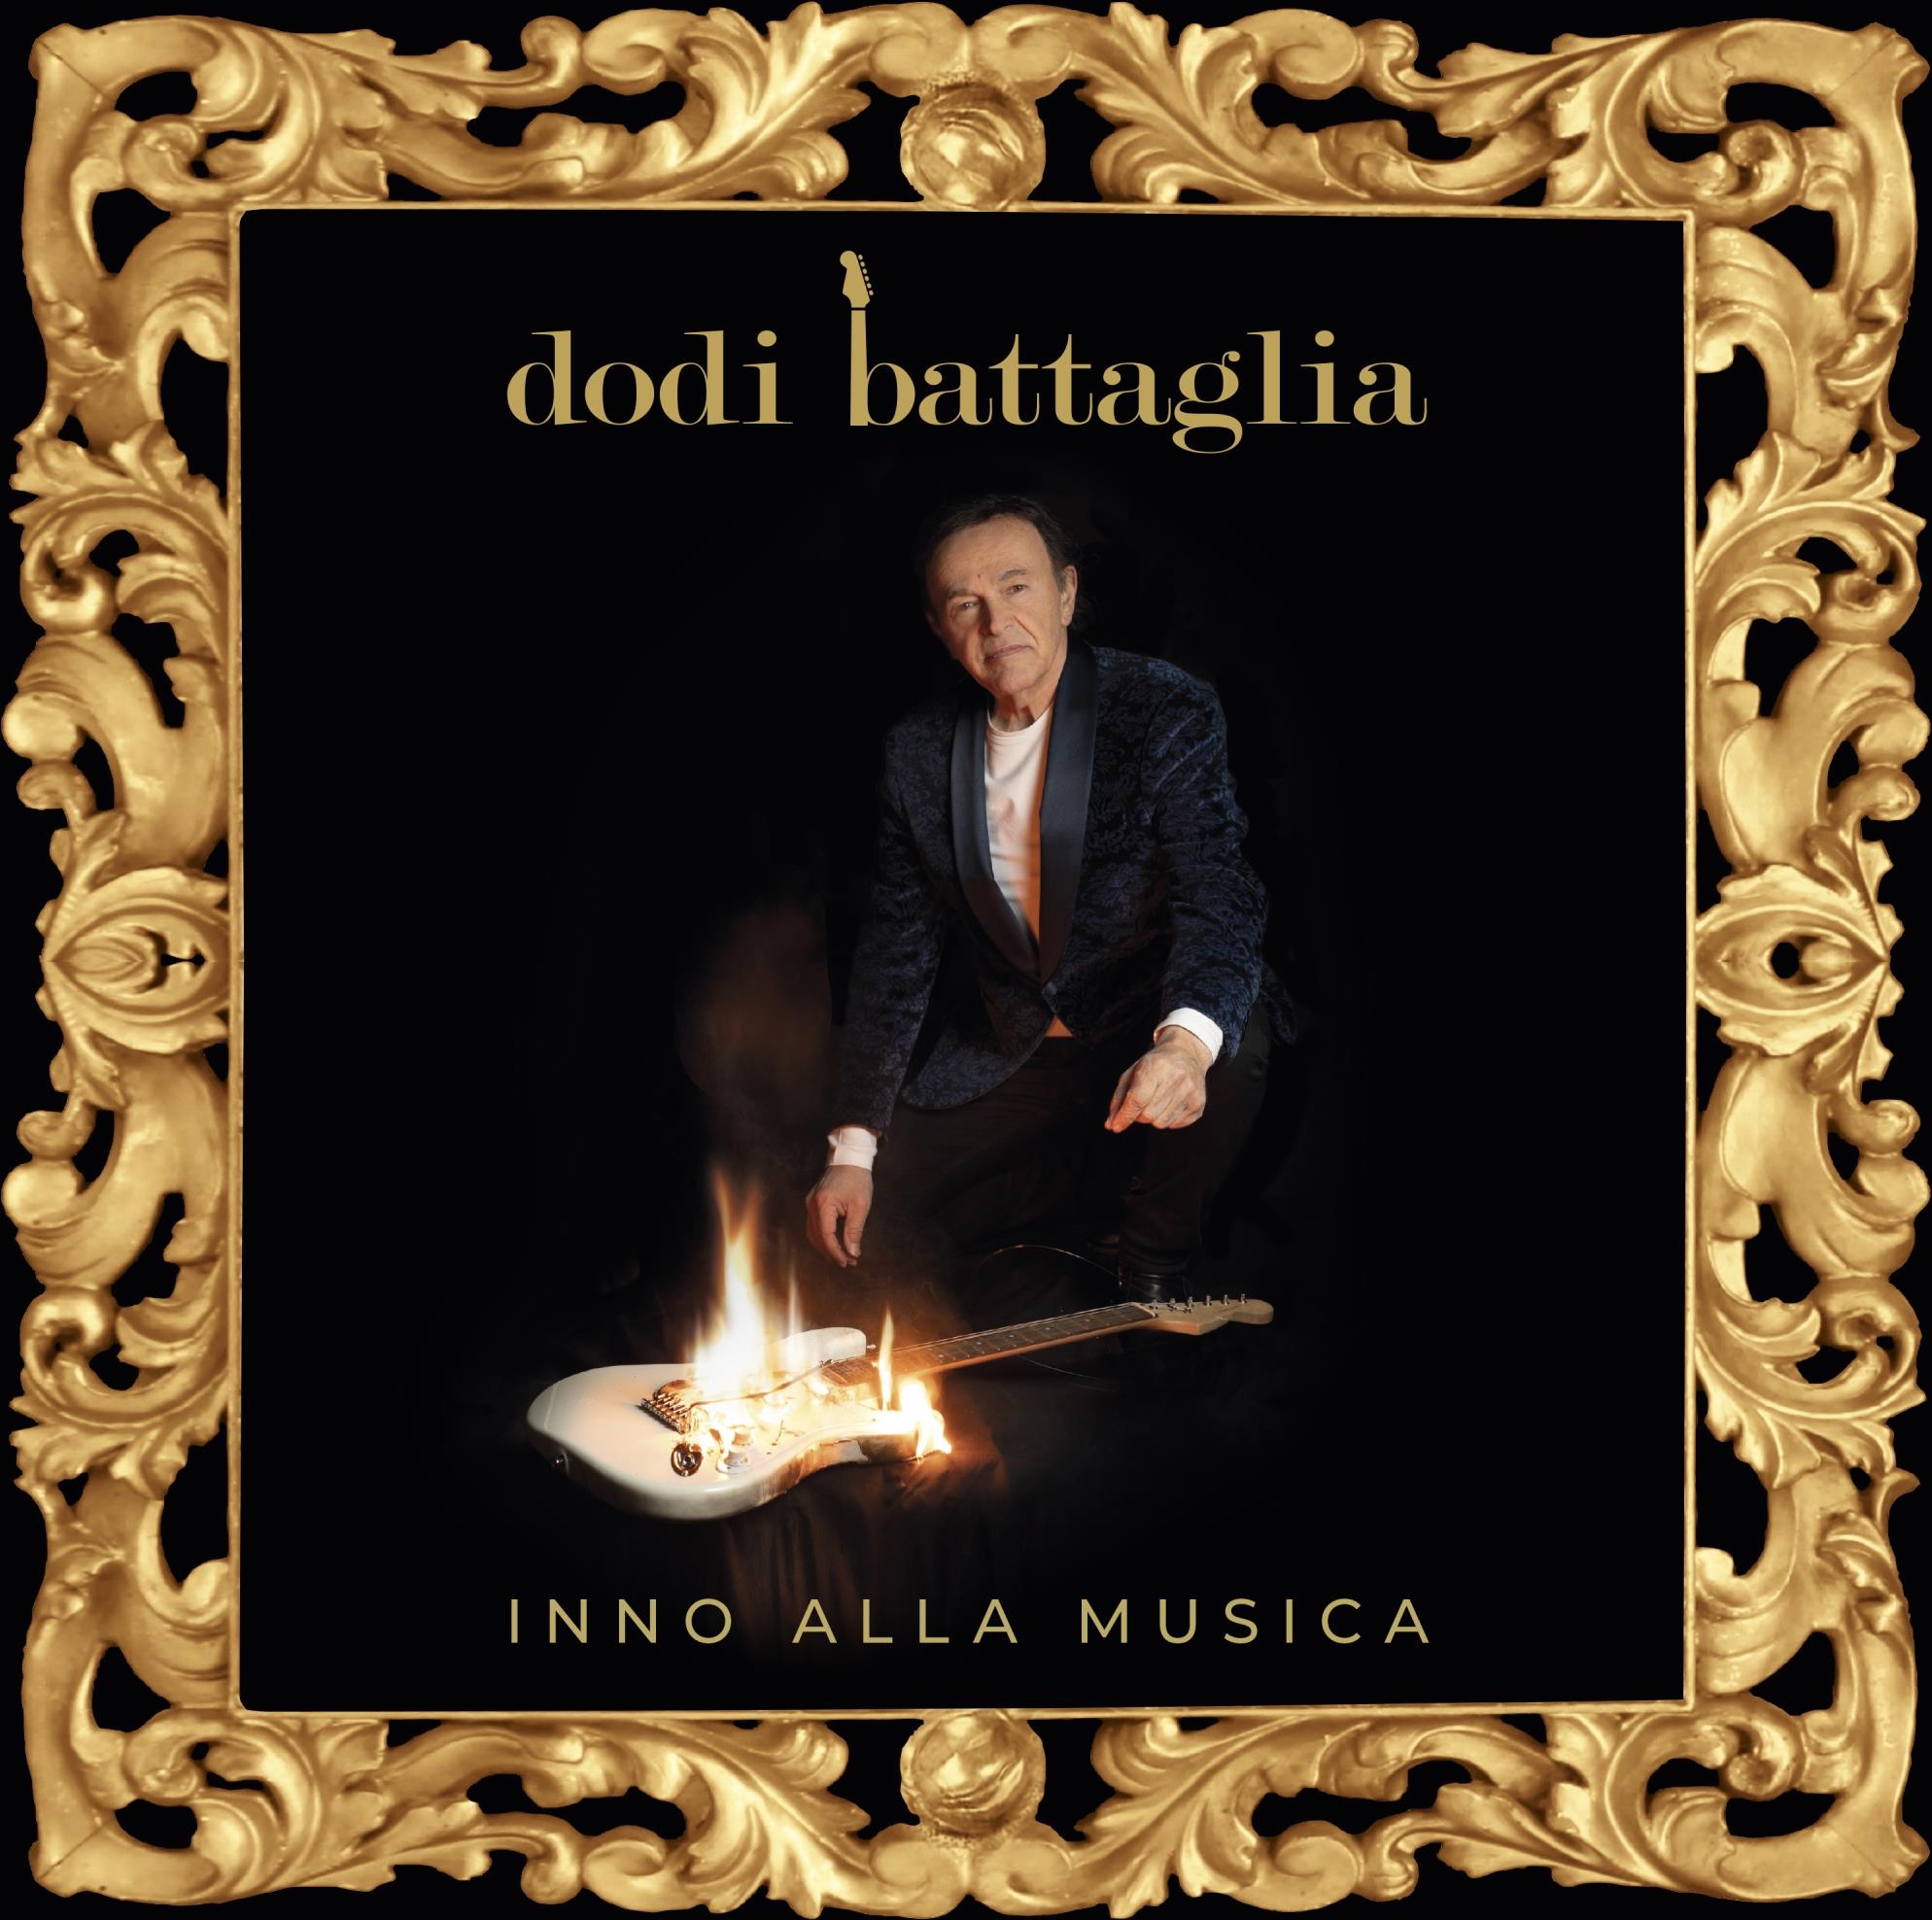 Audio Cd Dodi Battaglia - Una Storia Al Presente (Cd Digifile+Libro) NUOVO SIGILLATO, EDIZIONE DEL 14/05/2021 SUBITO DISPONIBILE